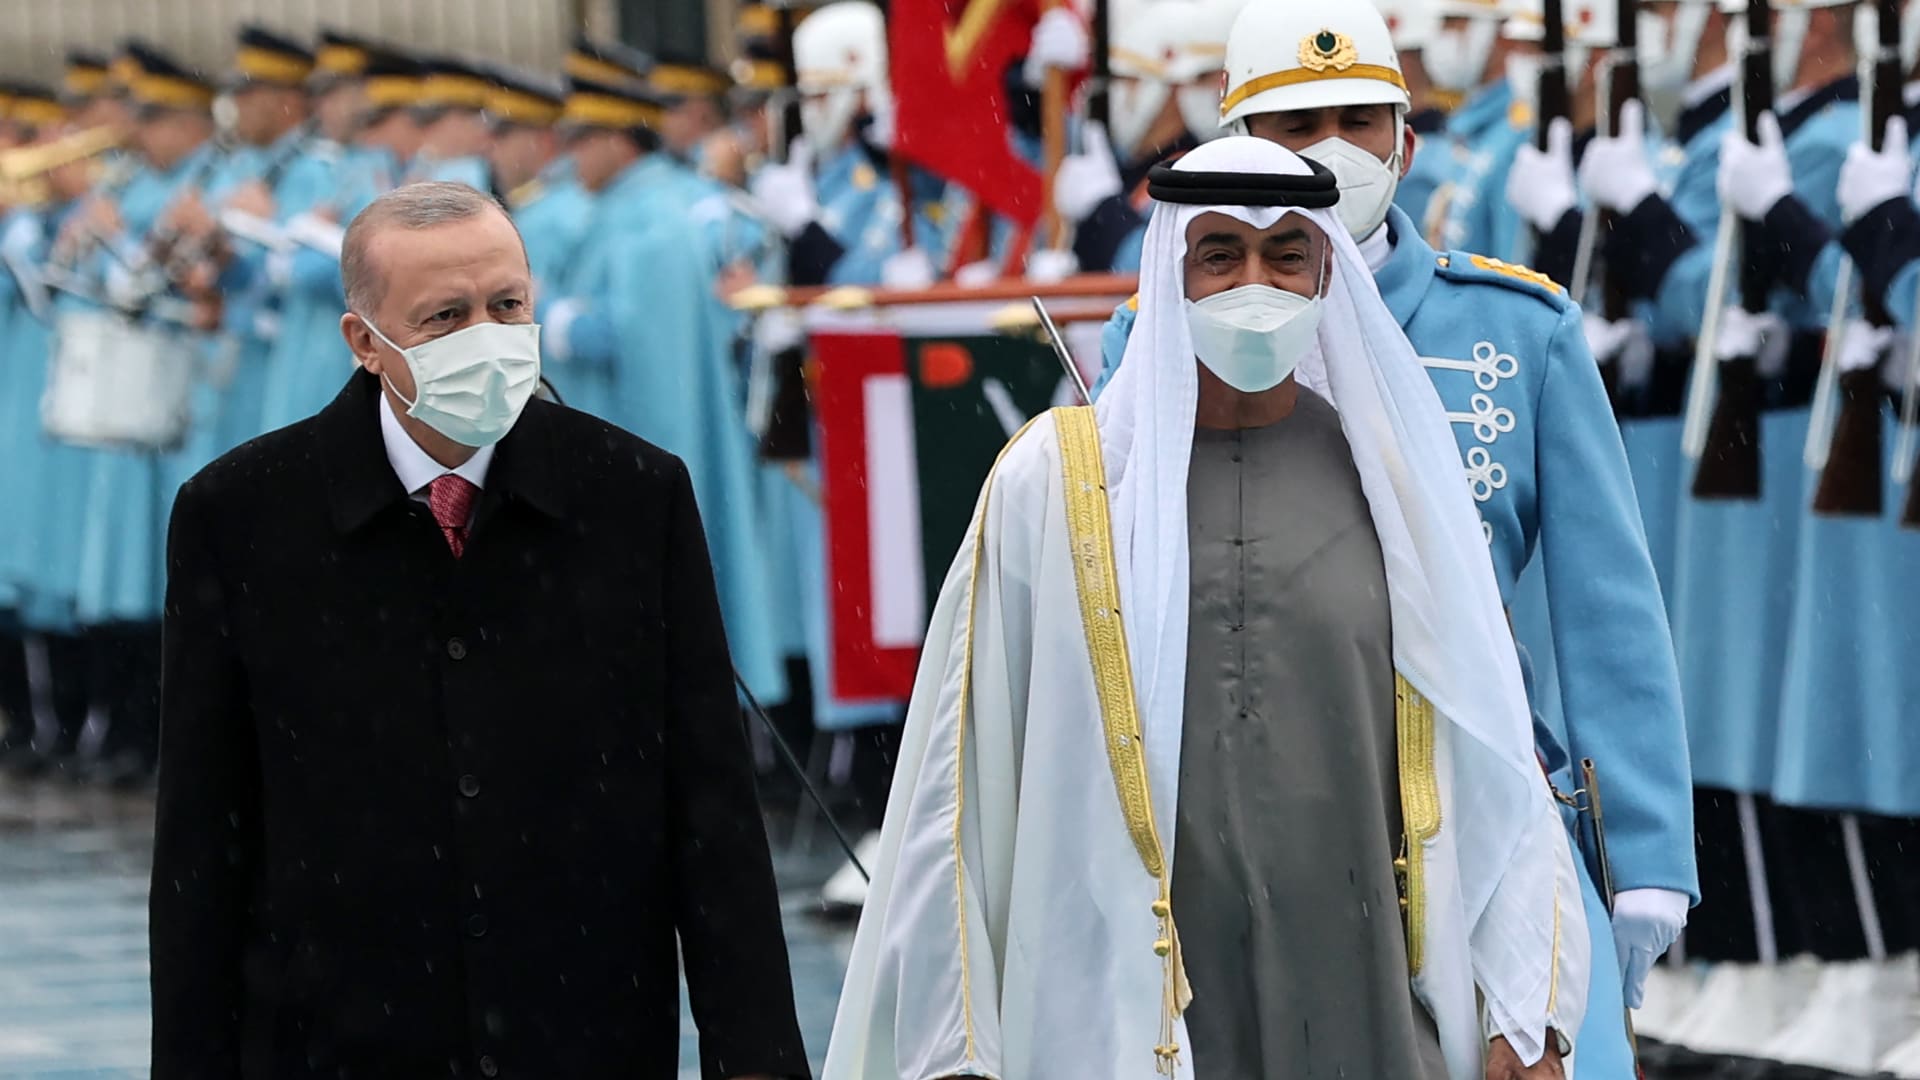 ما دوافع لقاء محمد بن زايد وأردوغان وما دوافع التغيير الذي تشهده المنطقة؟ فواز جرجس يوضح لـCNN